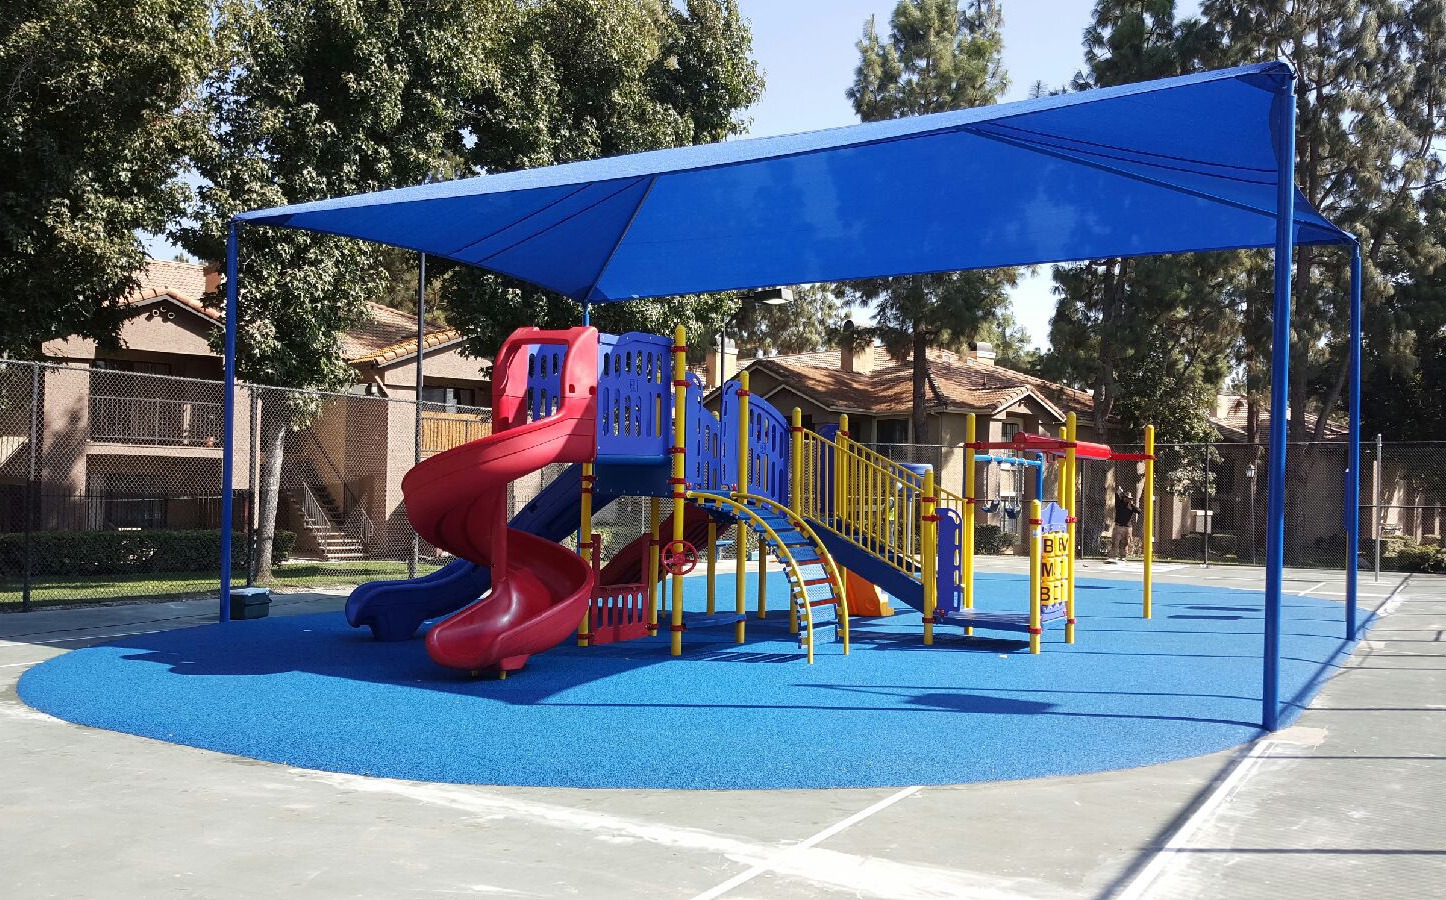 Terracina Apartment Homes' brand-new playground